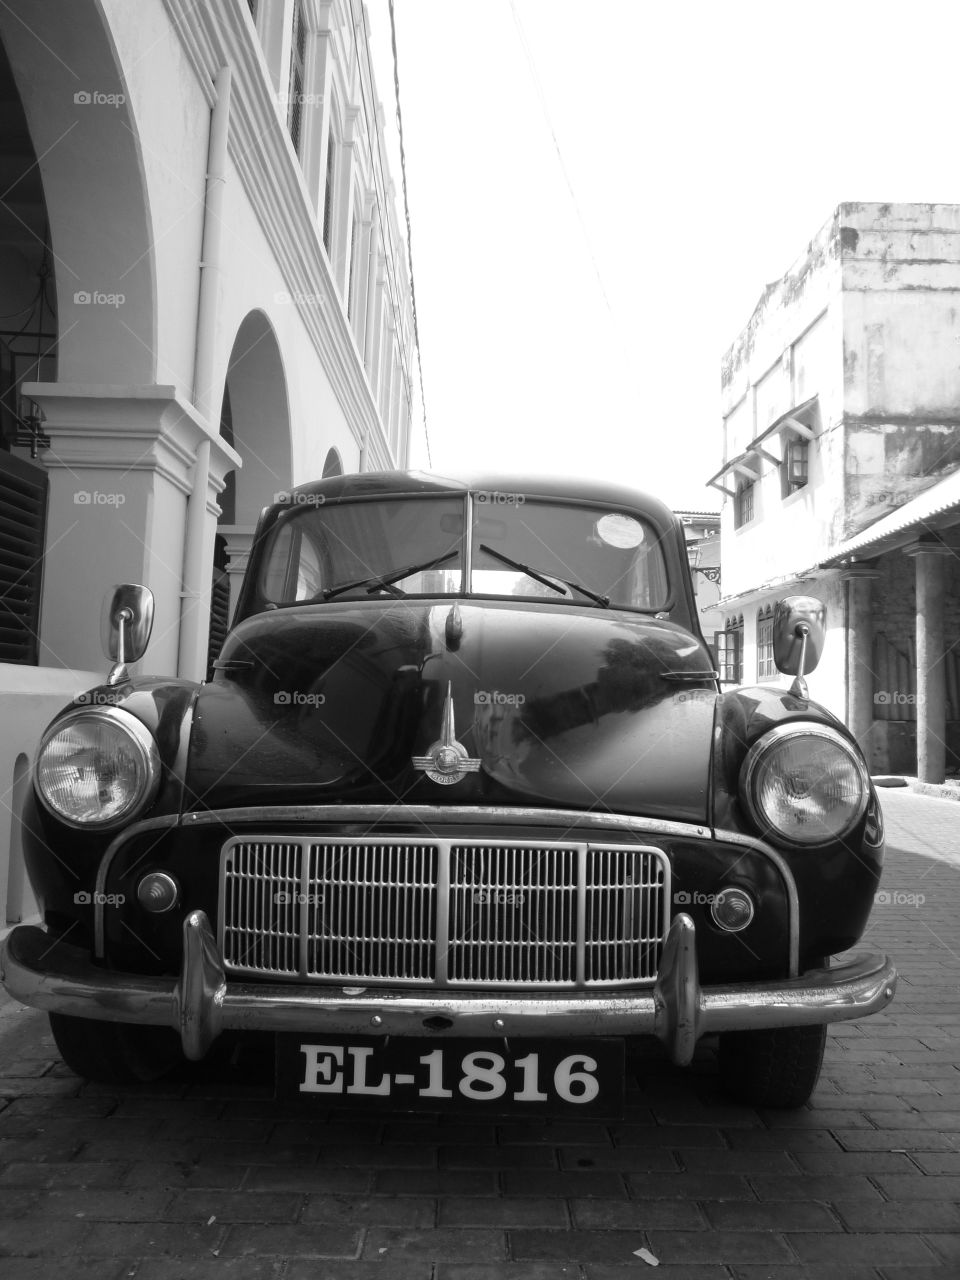 Vintage car in sri lanka